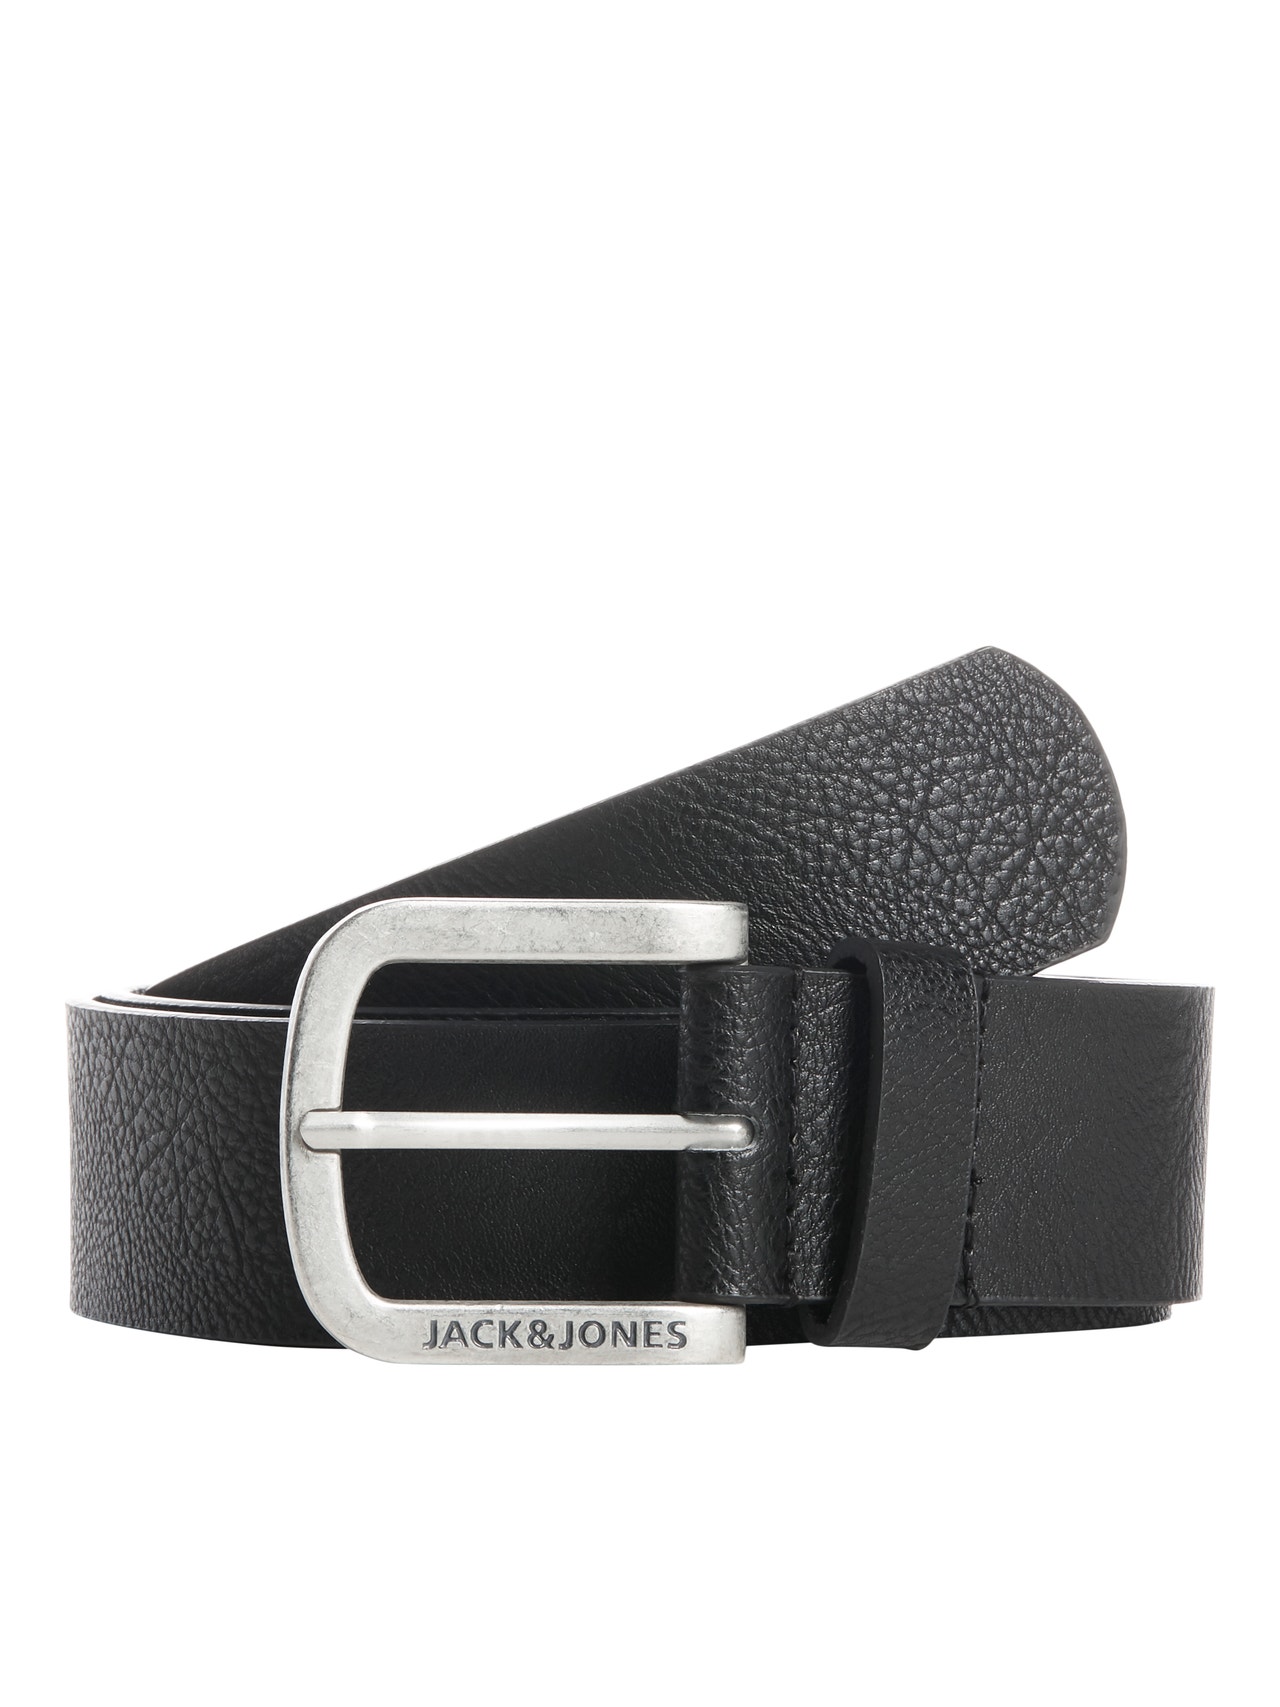 Jack & Jones Cintura Similpelle -Black - 12120697